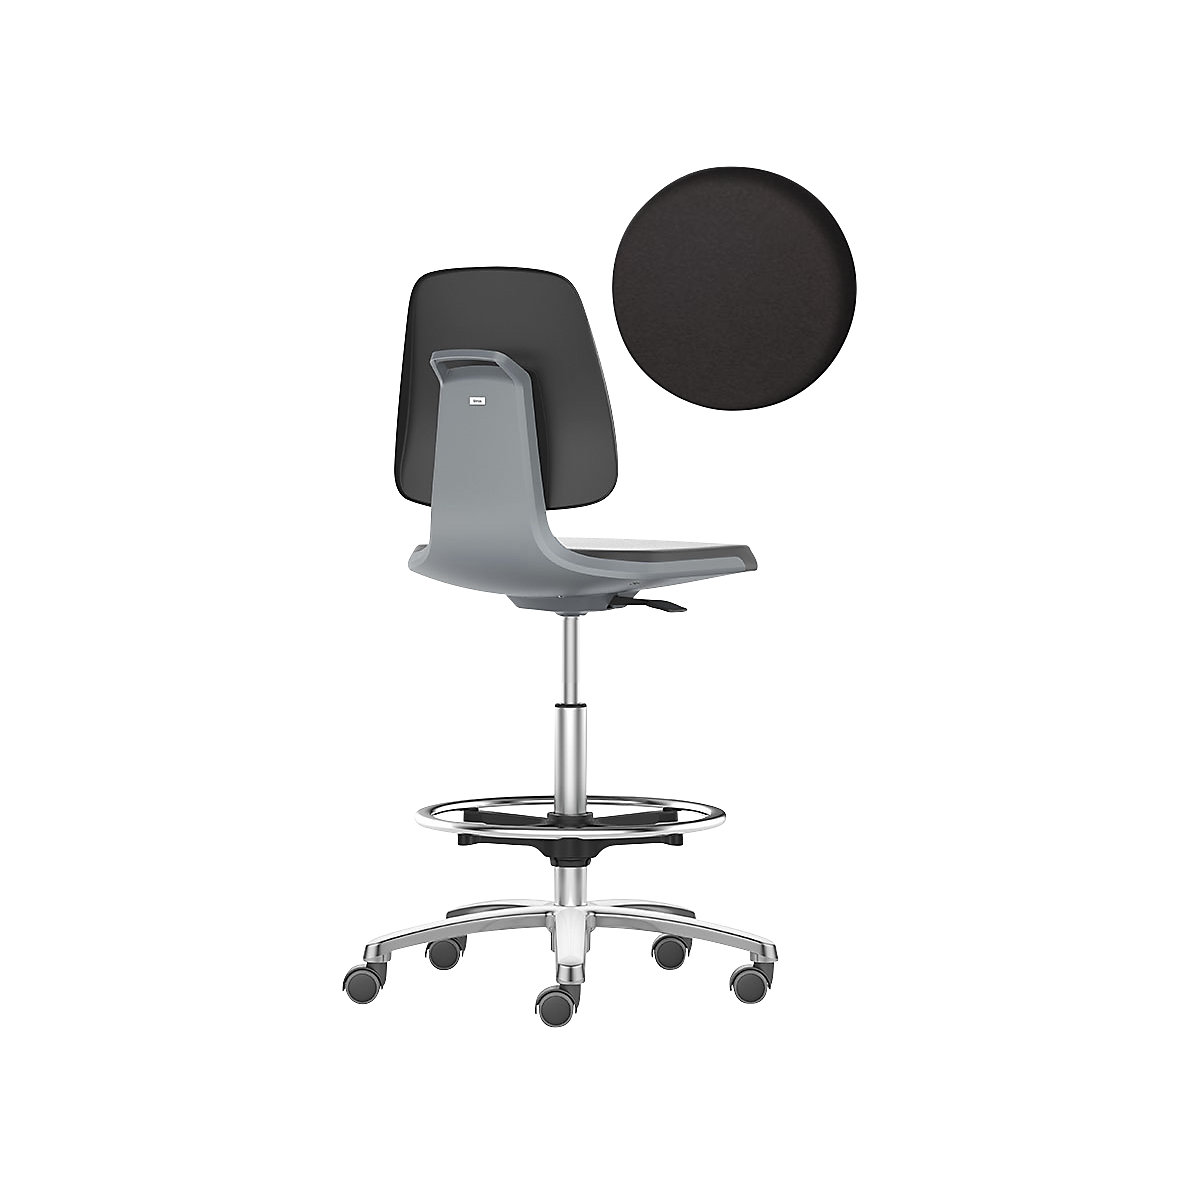 bimos – Siège d'atelier LABSIT, siège haut avec roulettes blocables et repose-pieds circulaire, assise à habillage similicuir, anthracite